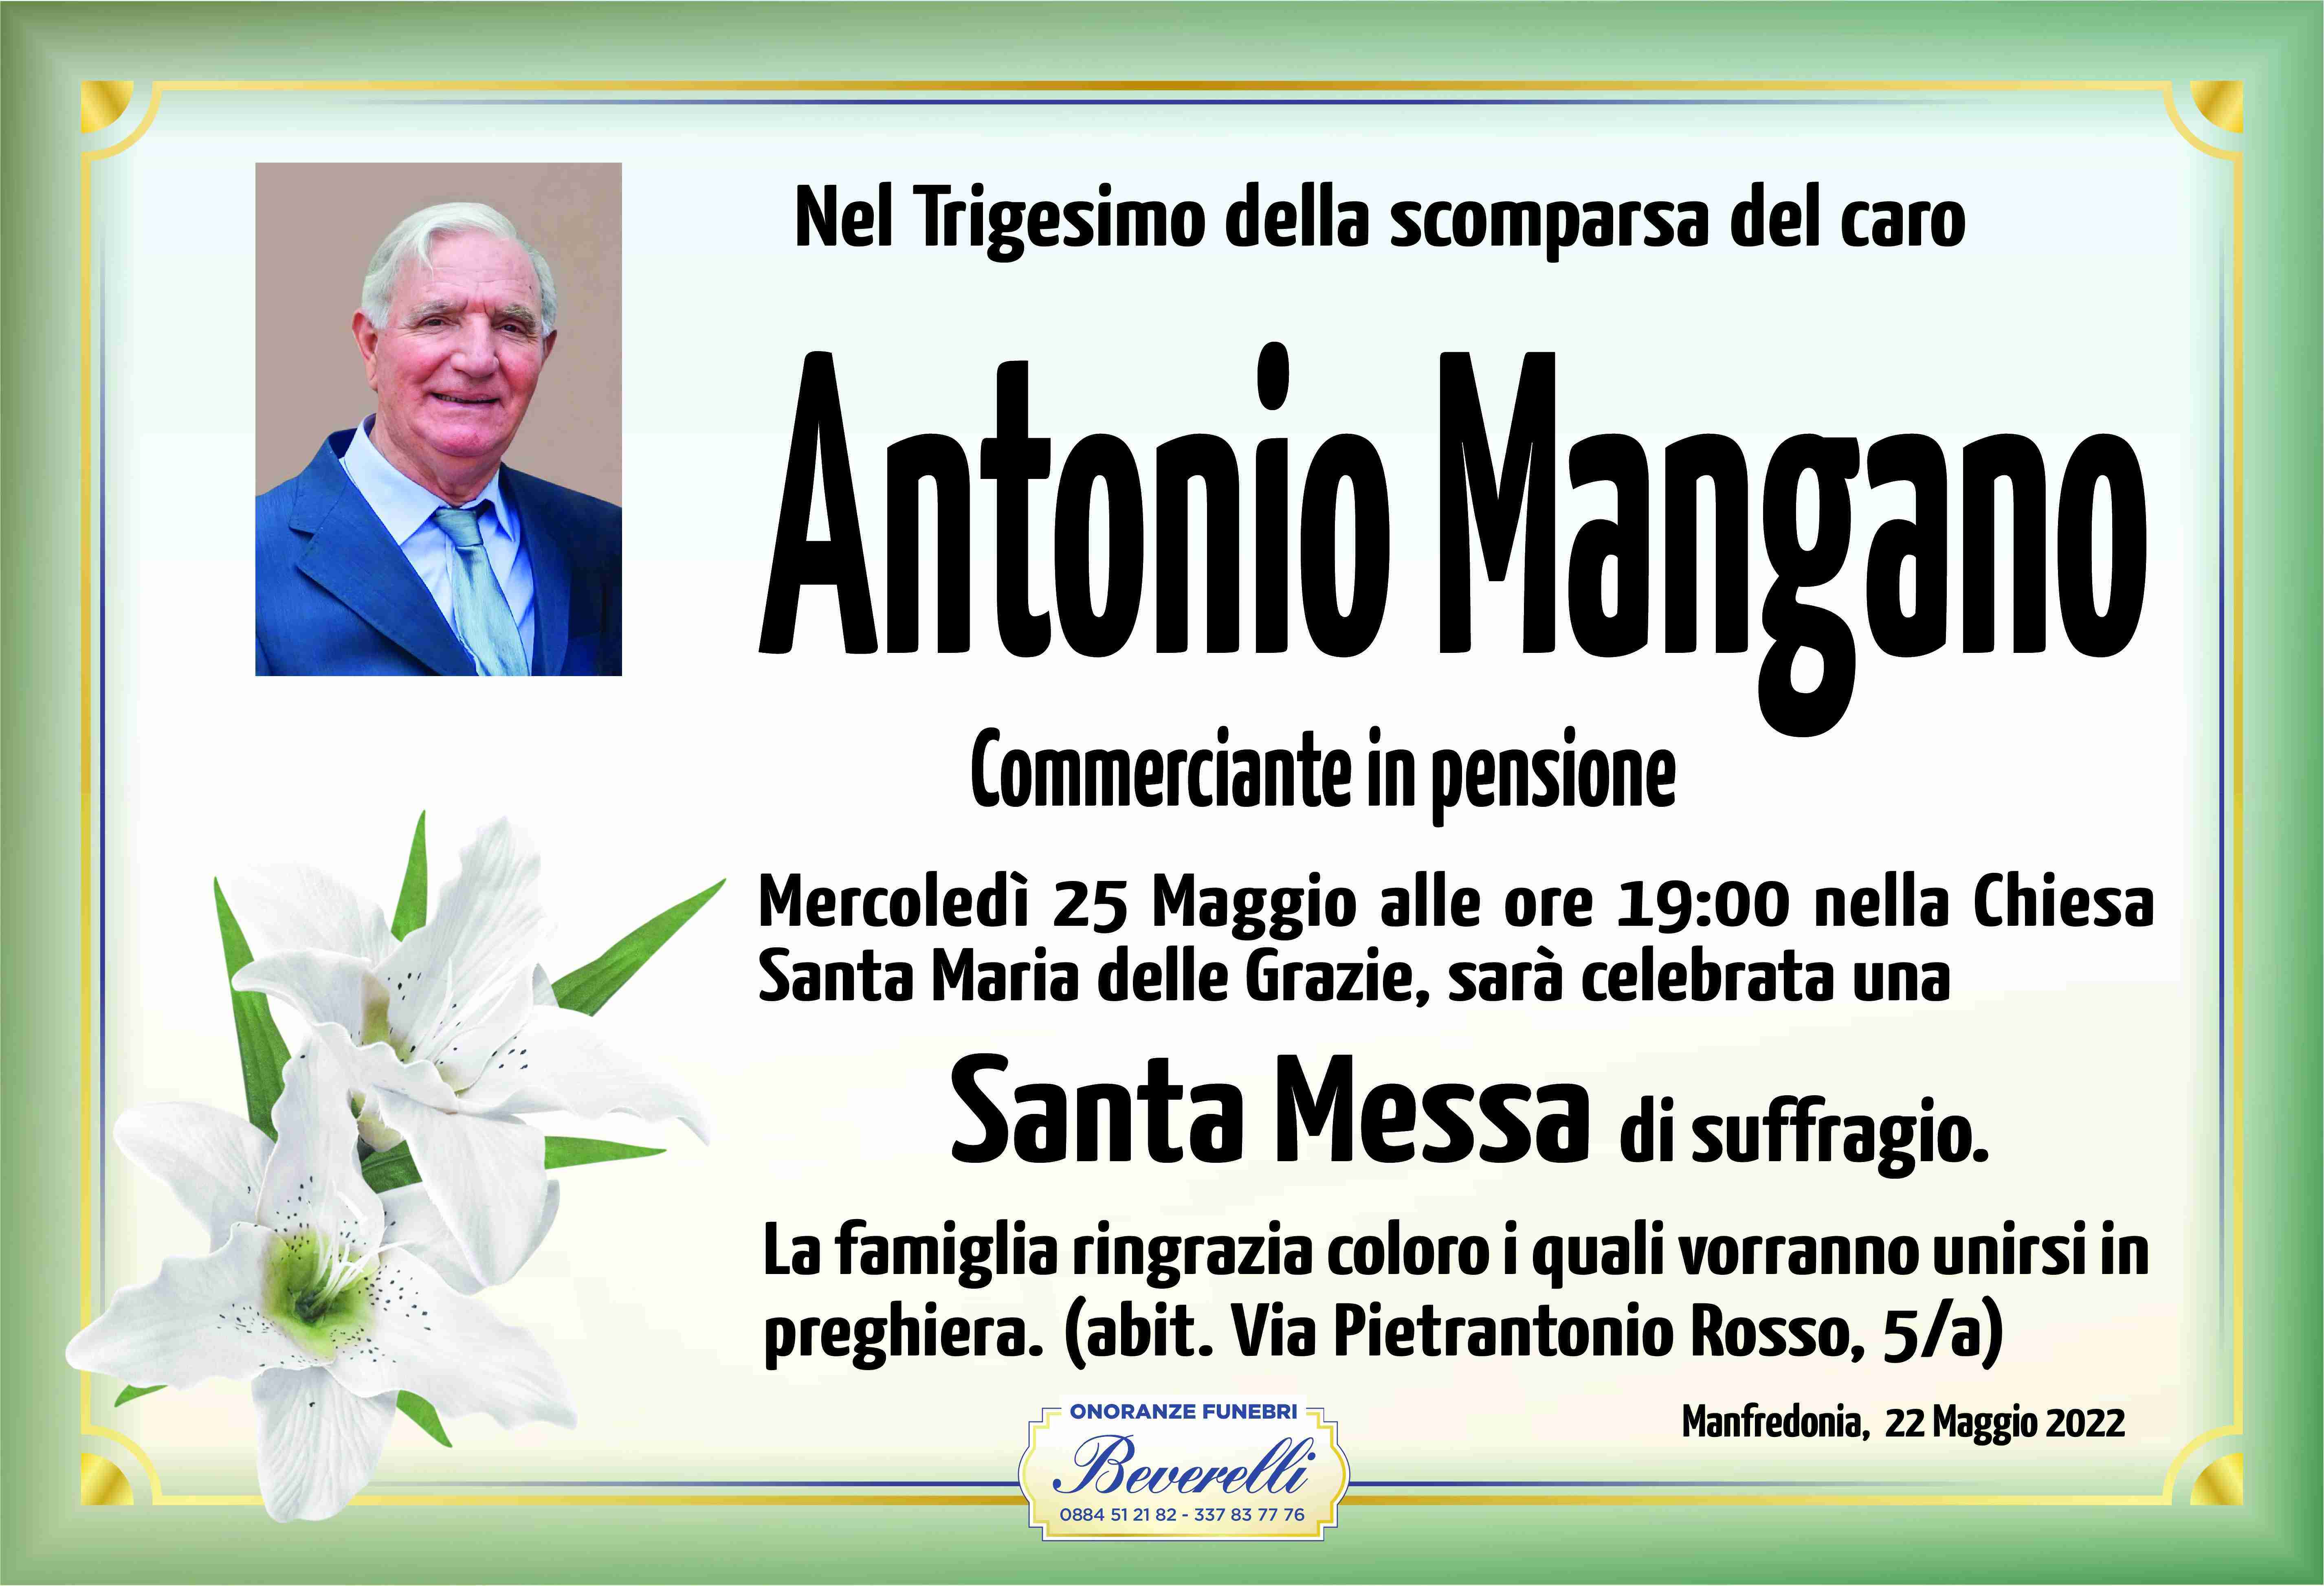 Antonio Mangano